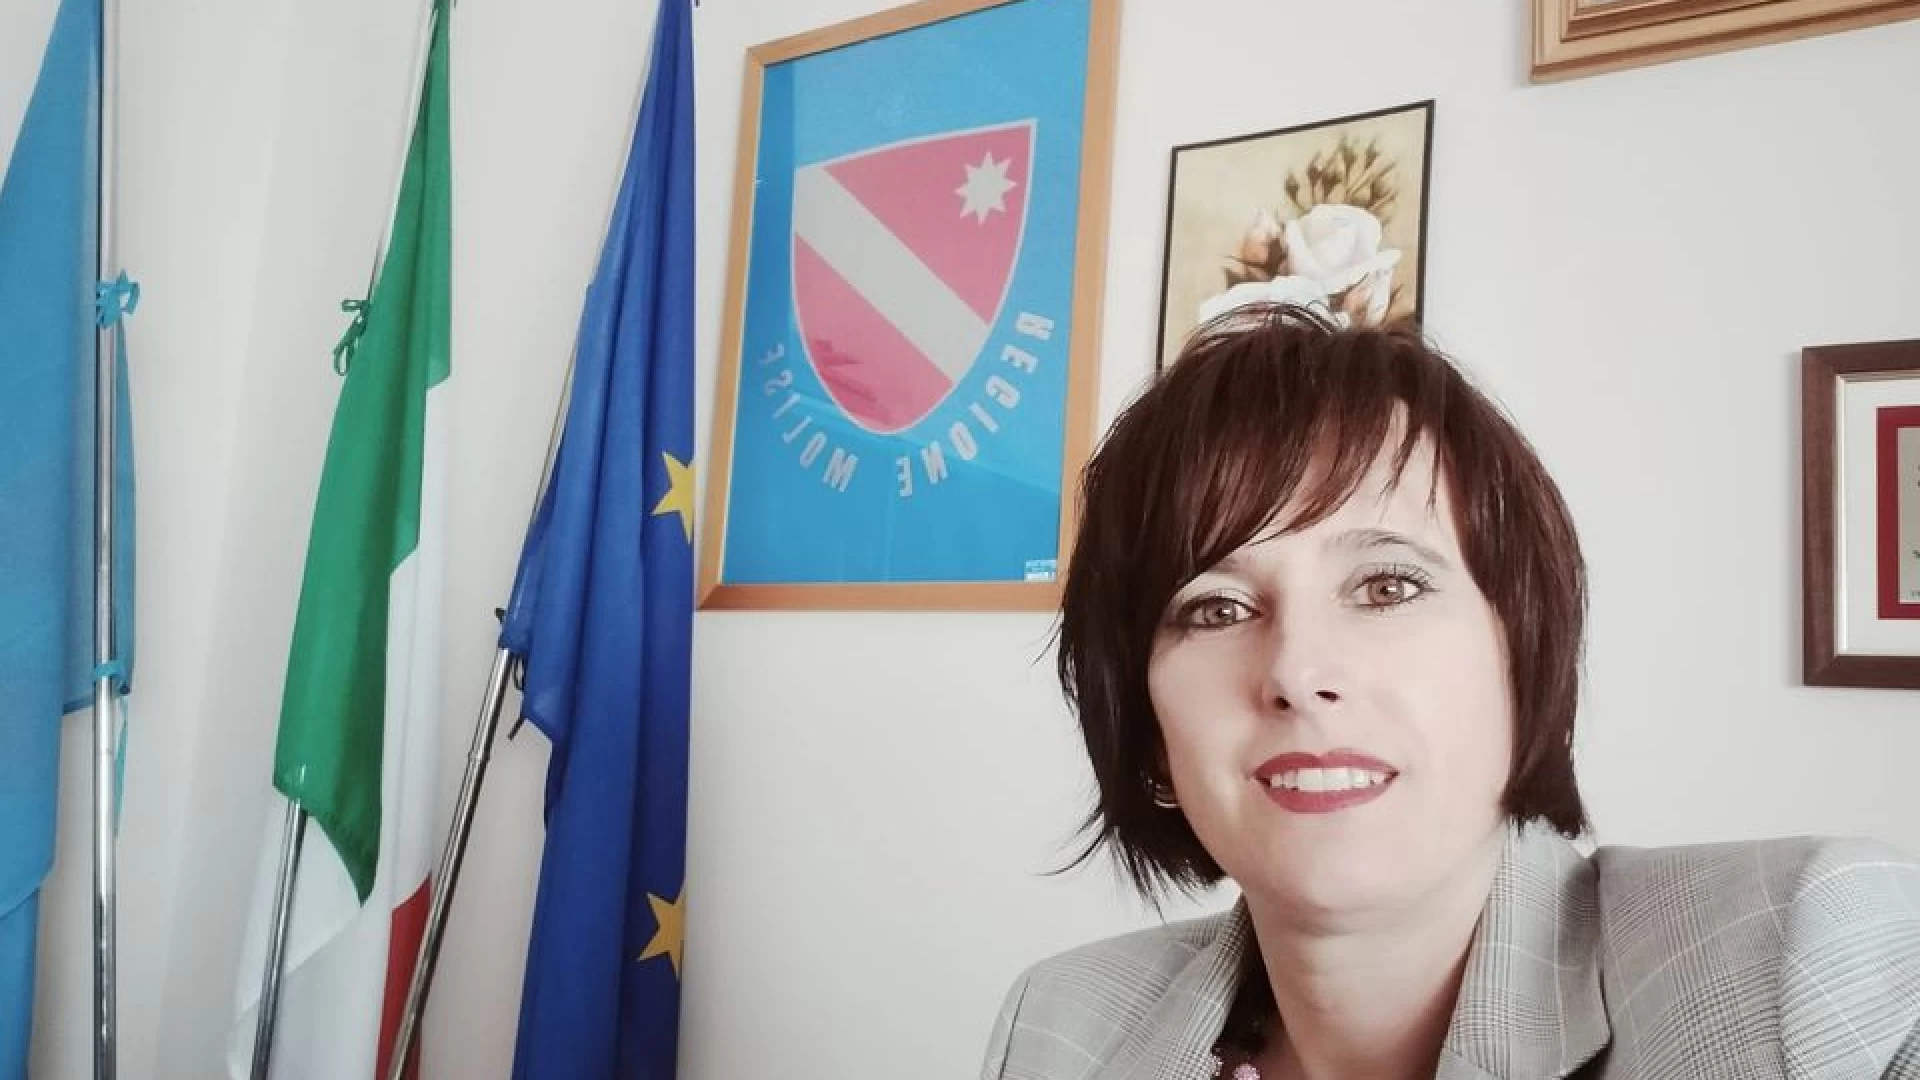 Consorzio di Bonifica di Venafro, Aida Romagnuolo: ‘il mio aiuto per superare il problema del mancato stipendio’